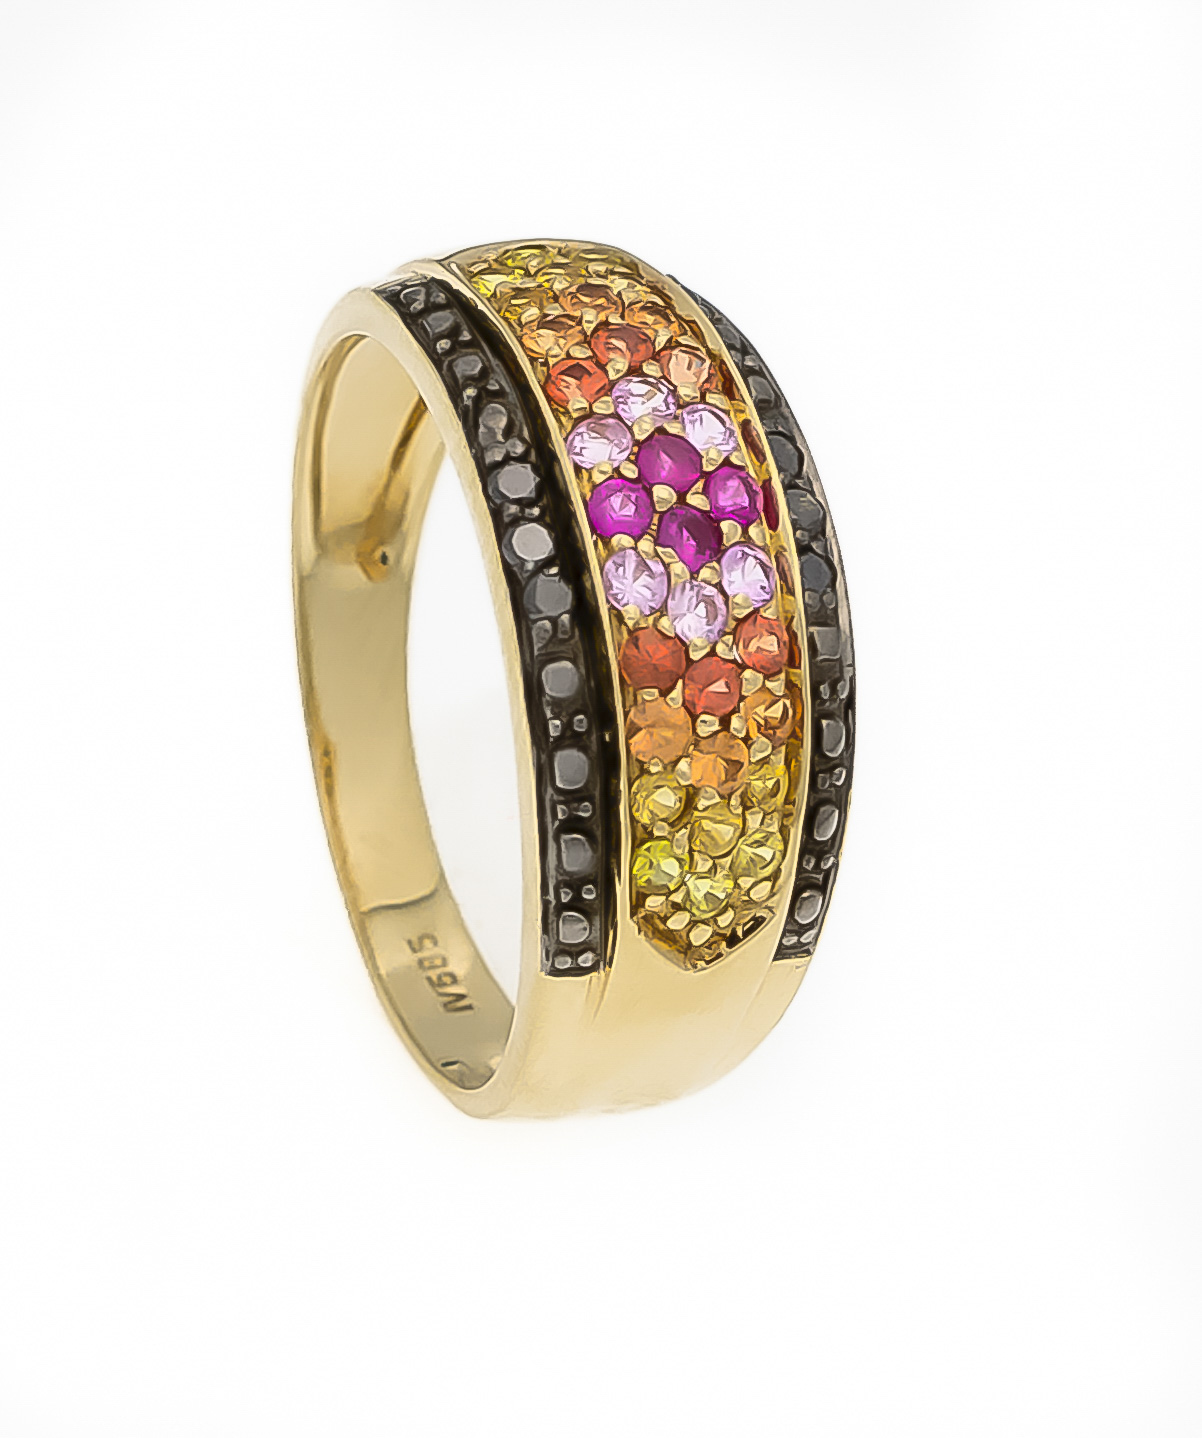 Multicolor-Saphir-Ring GG 585/000 mit rund fac., pinken, orangen und gelben Saphiren 1,8mm in sehr